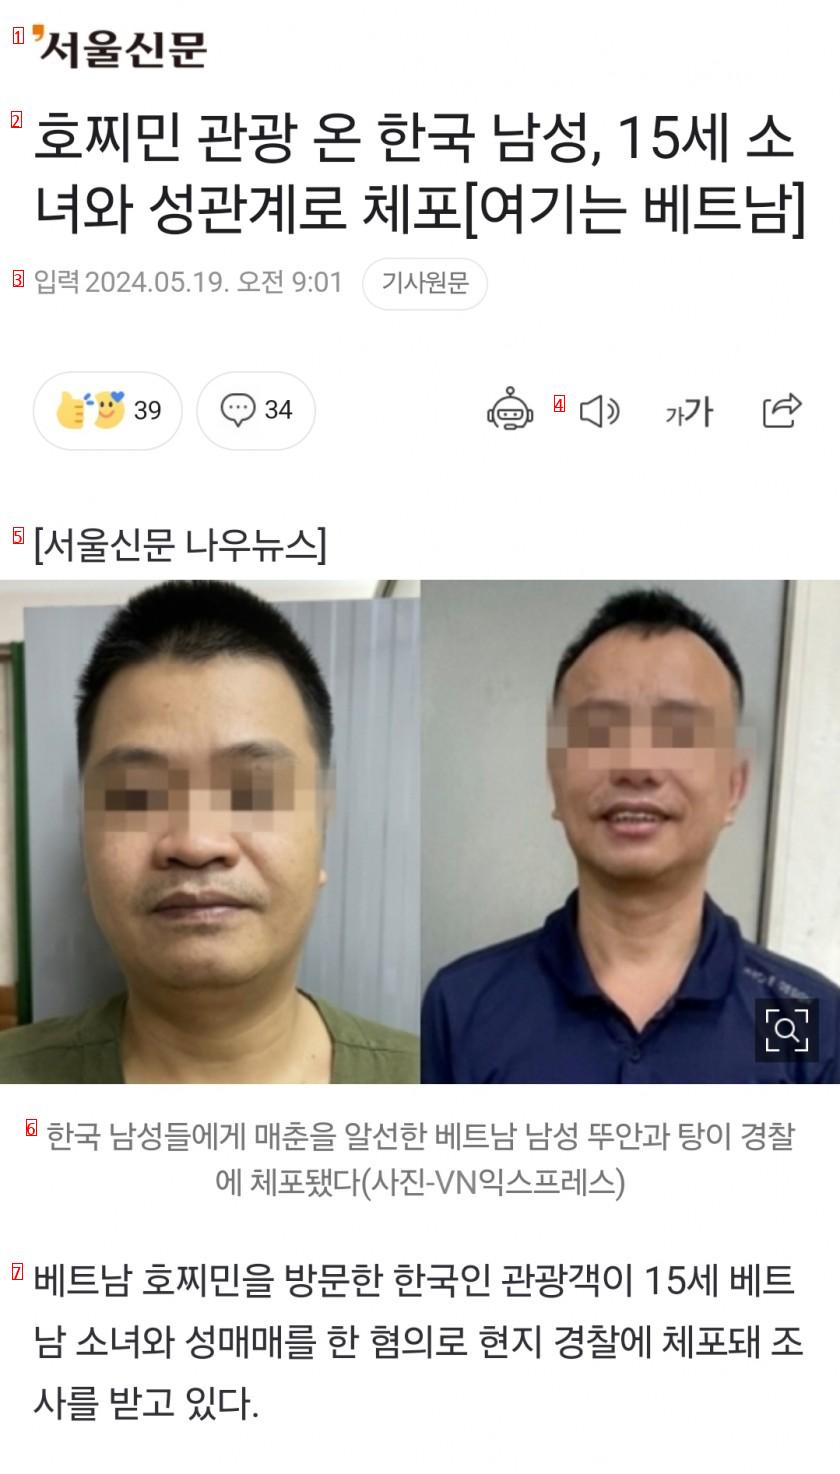 호찌민 관광 온 한국 남성, 15세 소녀와 성관계로 체포